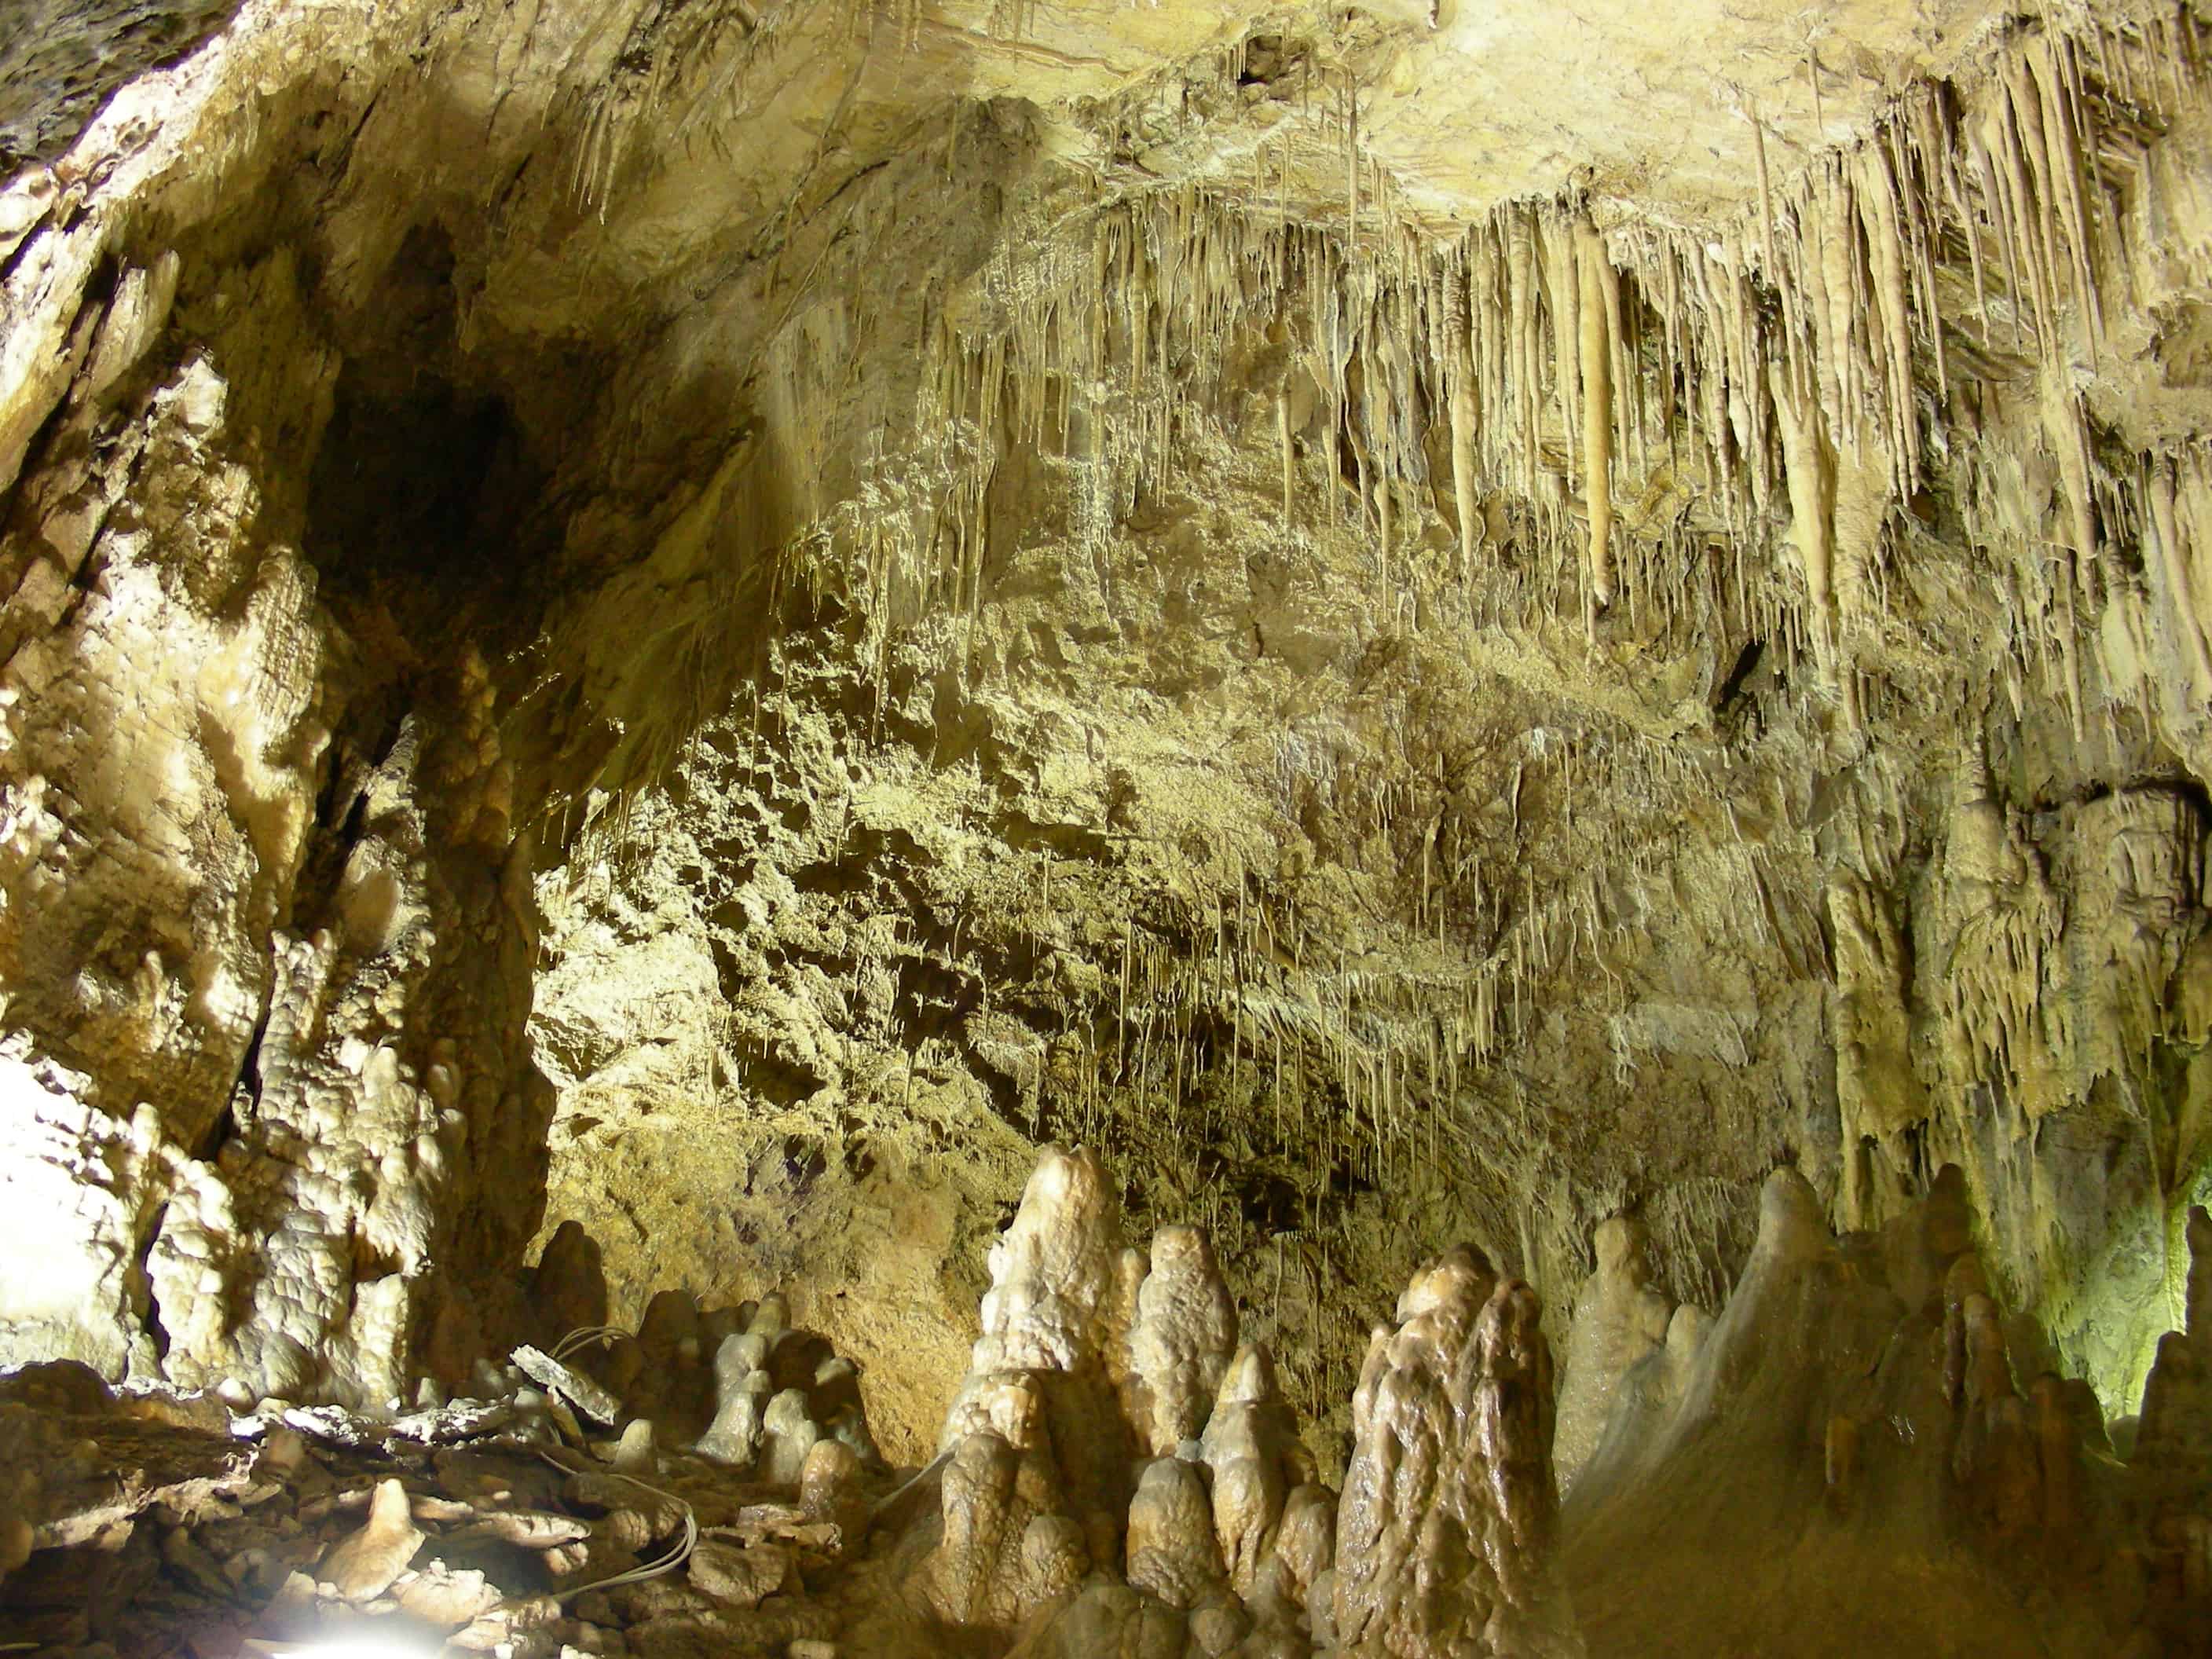 grotta del cavallone - ampie sale sotterranee con stalattiti e stalagmiti